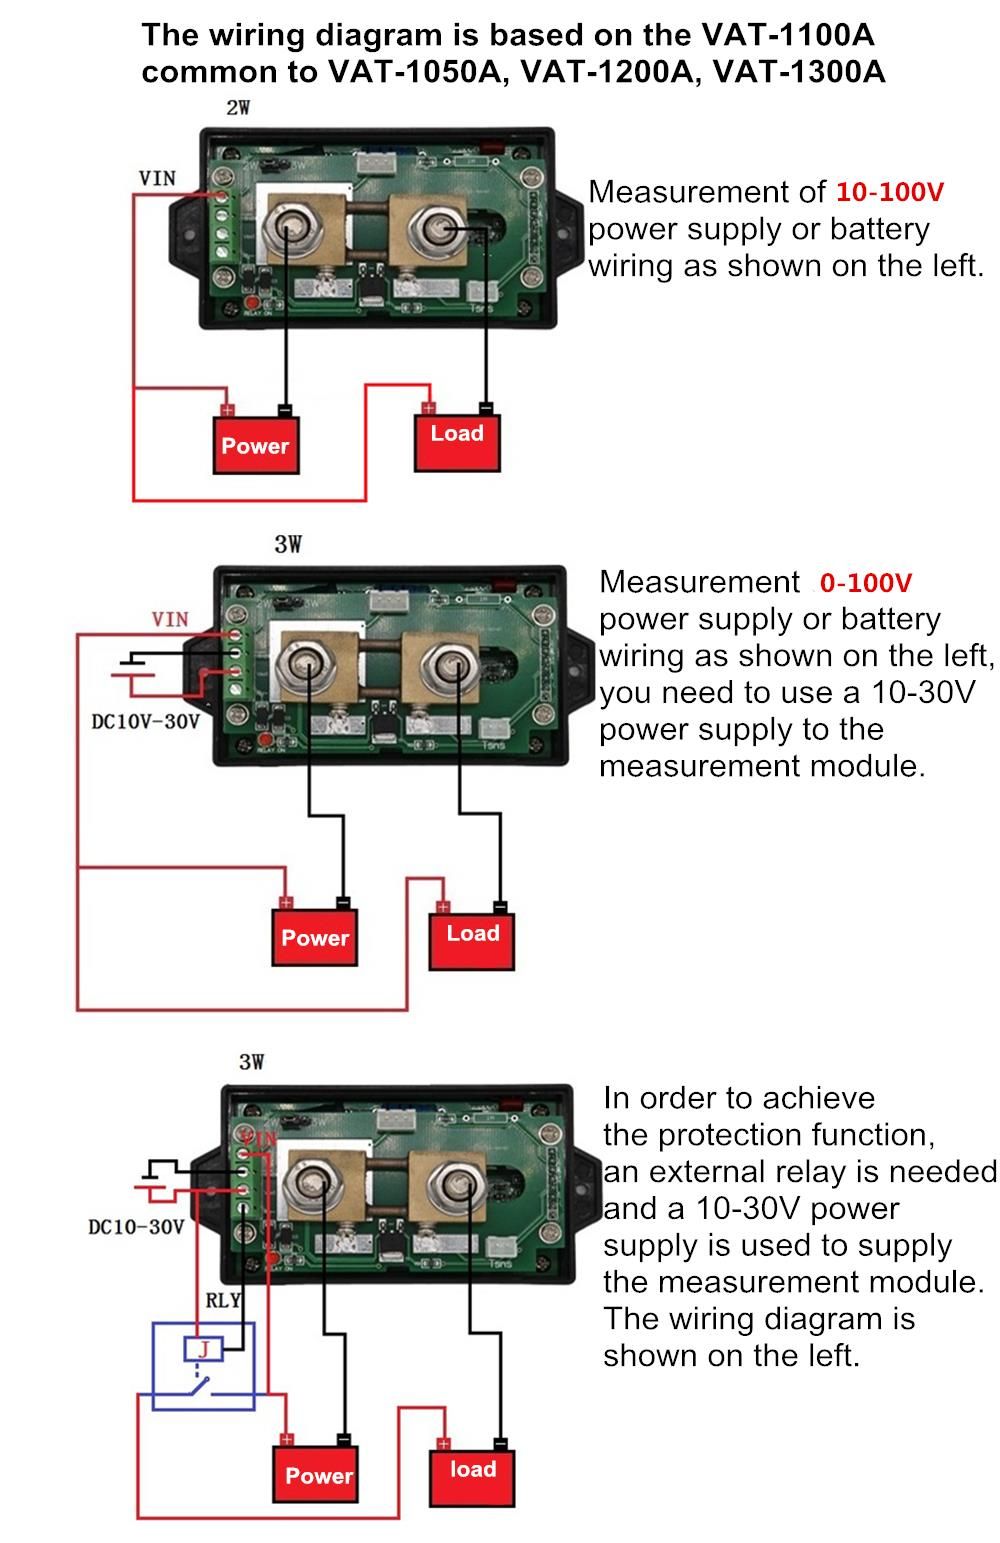 VAT1050-Wireless-DC-Voltmeter-Current-Tester-Watt-Measurement-Digital-Display-Electric-Garage-Meter--1293745